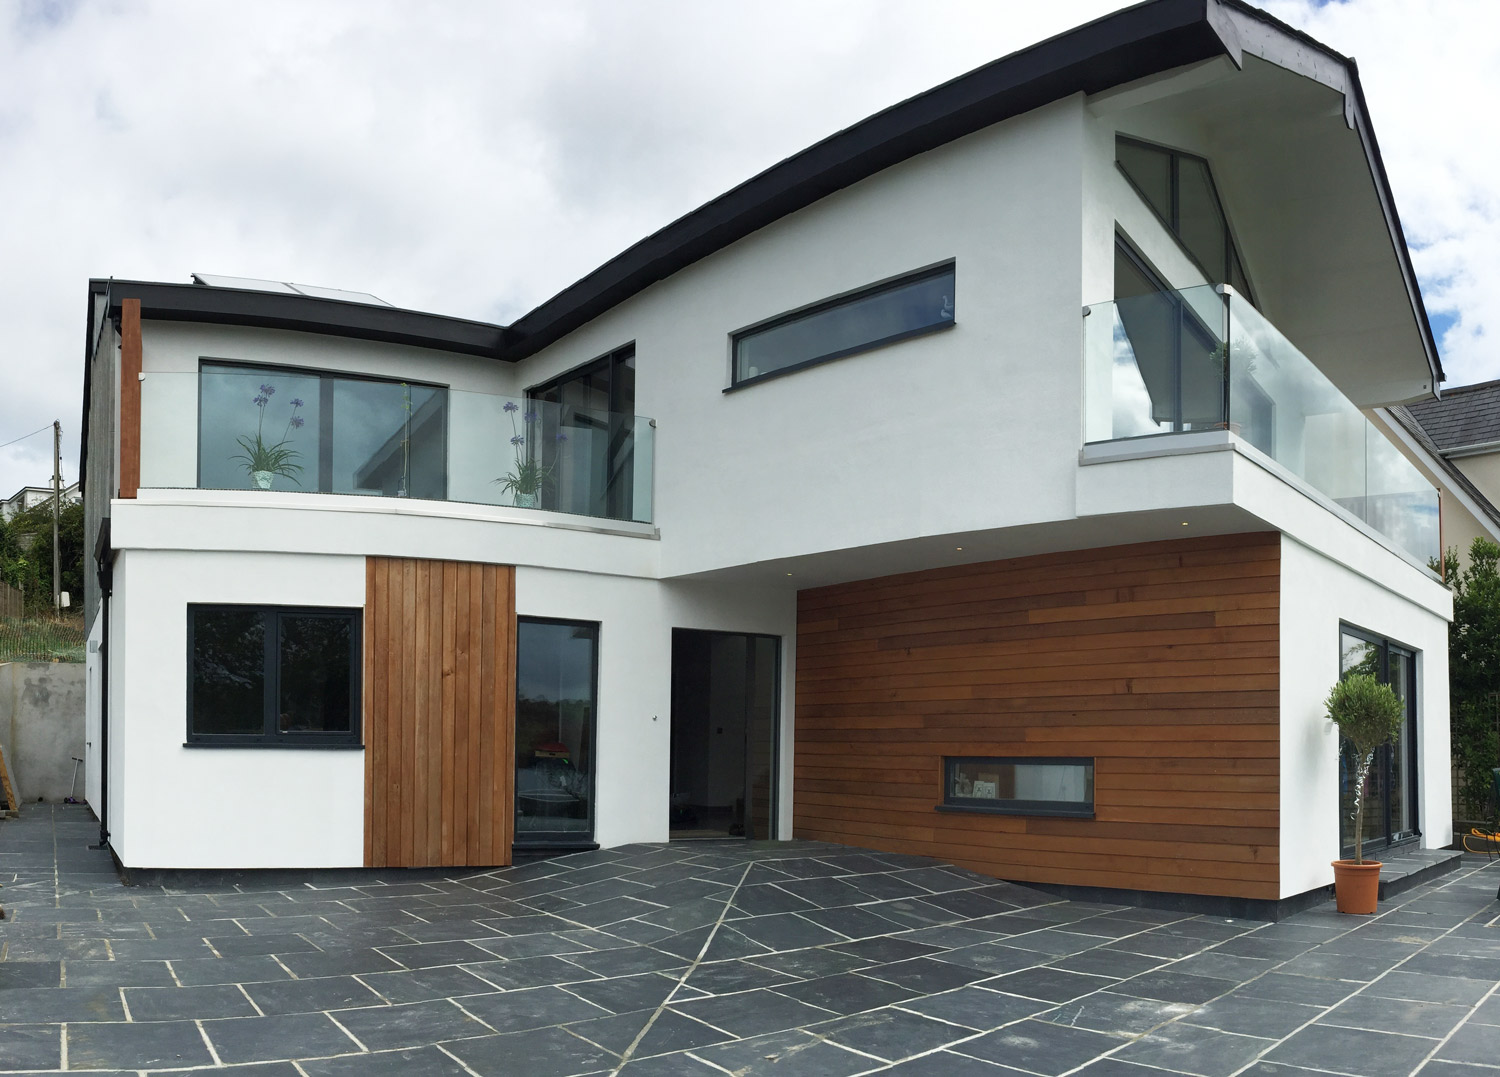 Cornwall Architect designed house - entrance